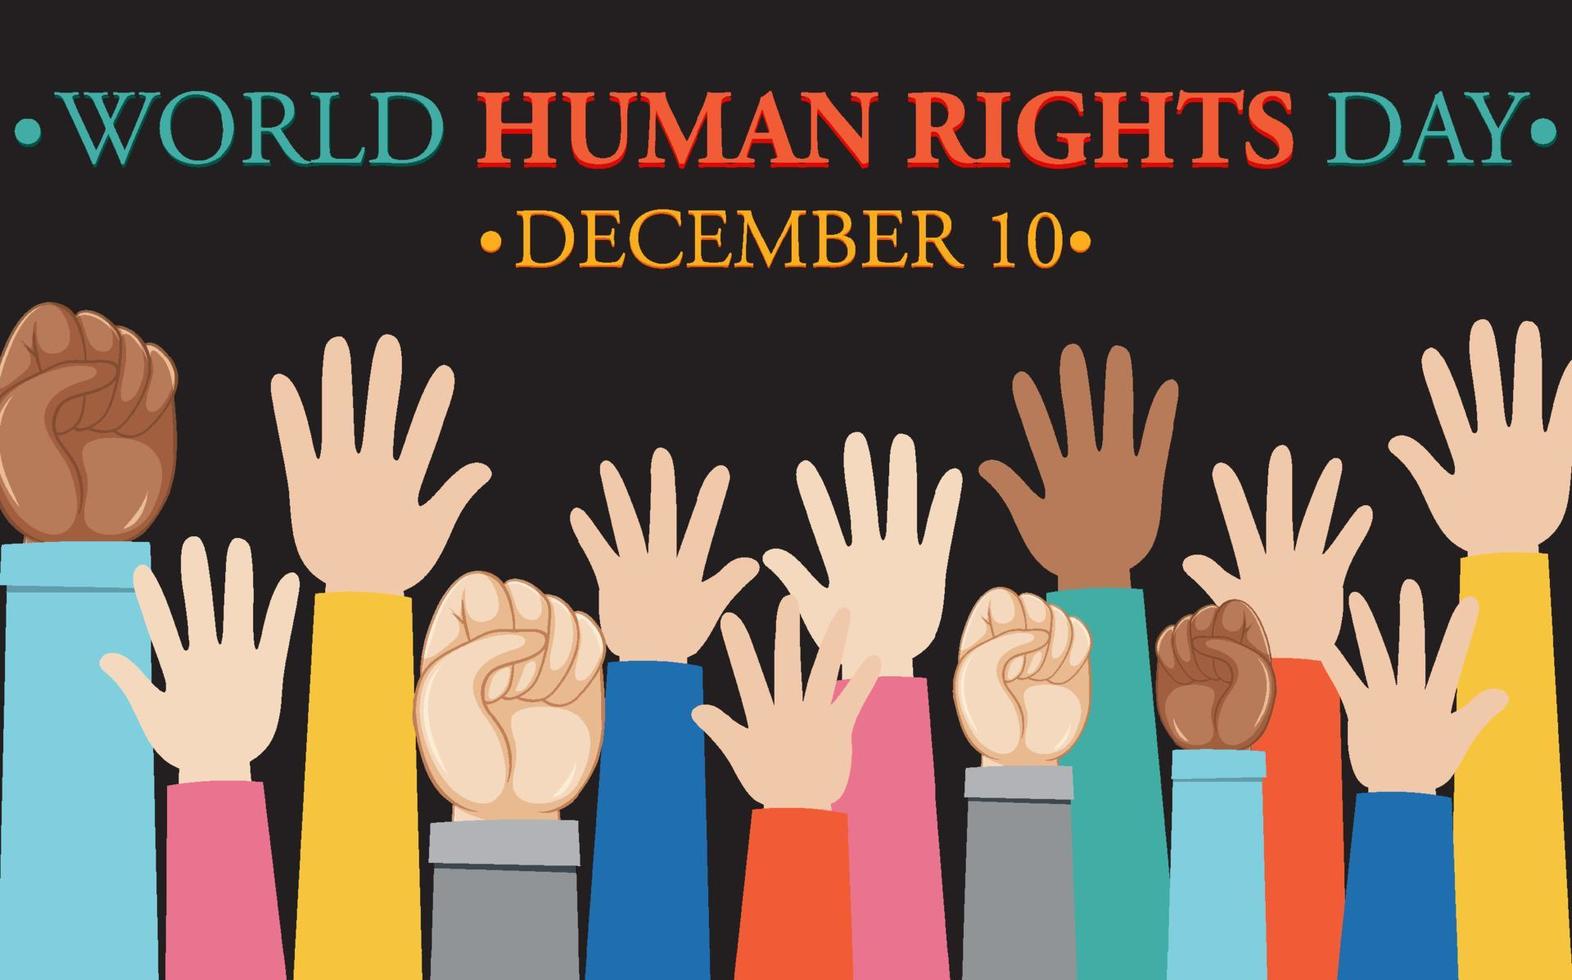 conception d'affiche de la journée mondiale des droits de l'homme vecteur